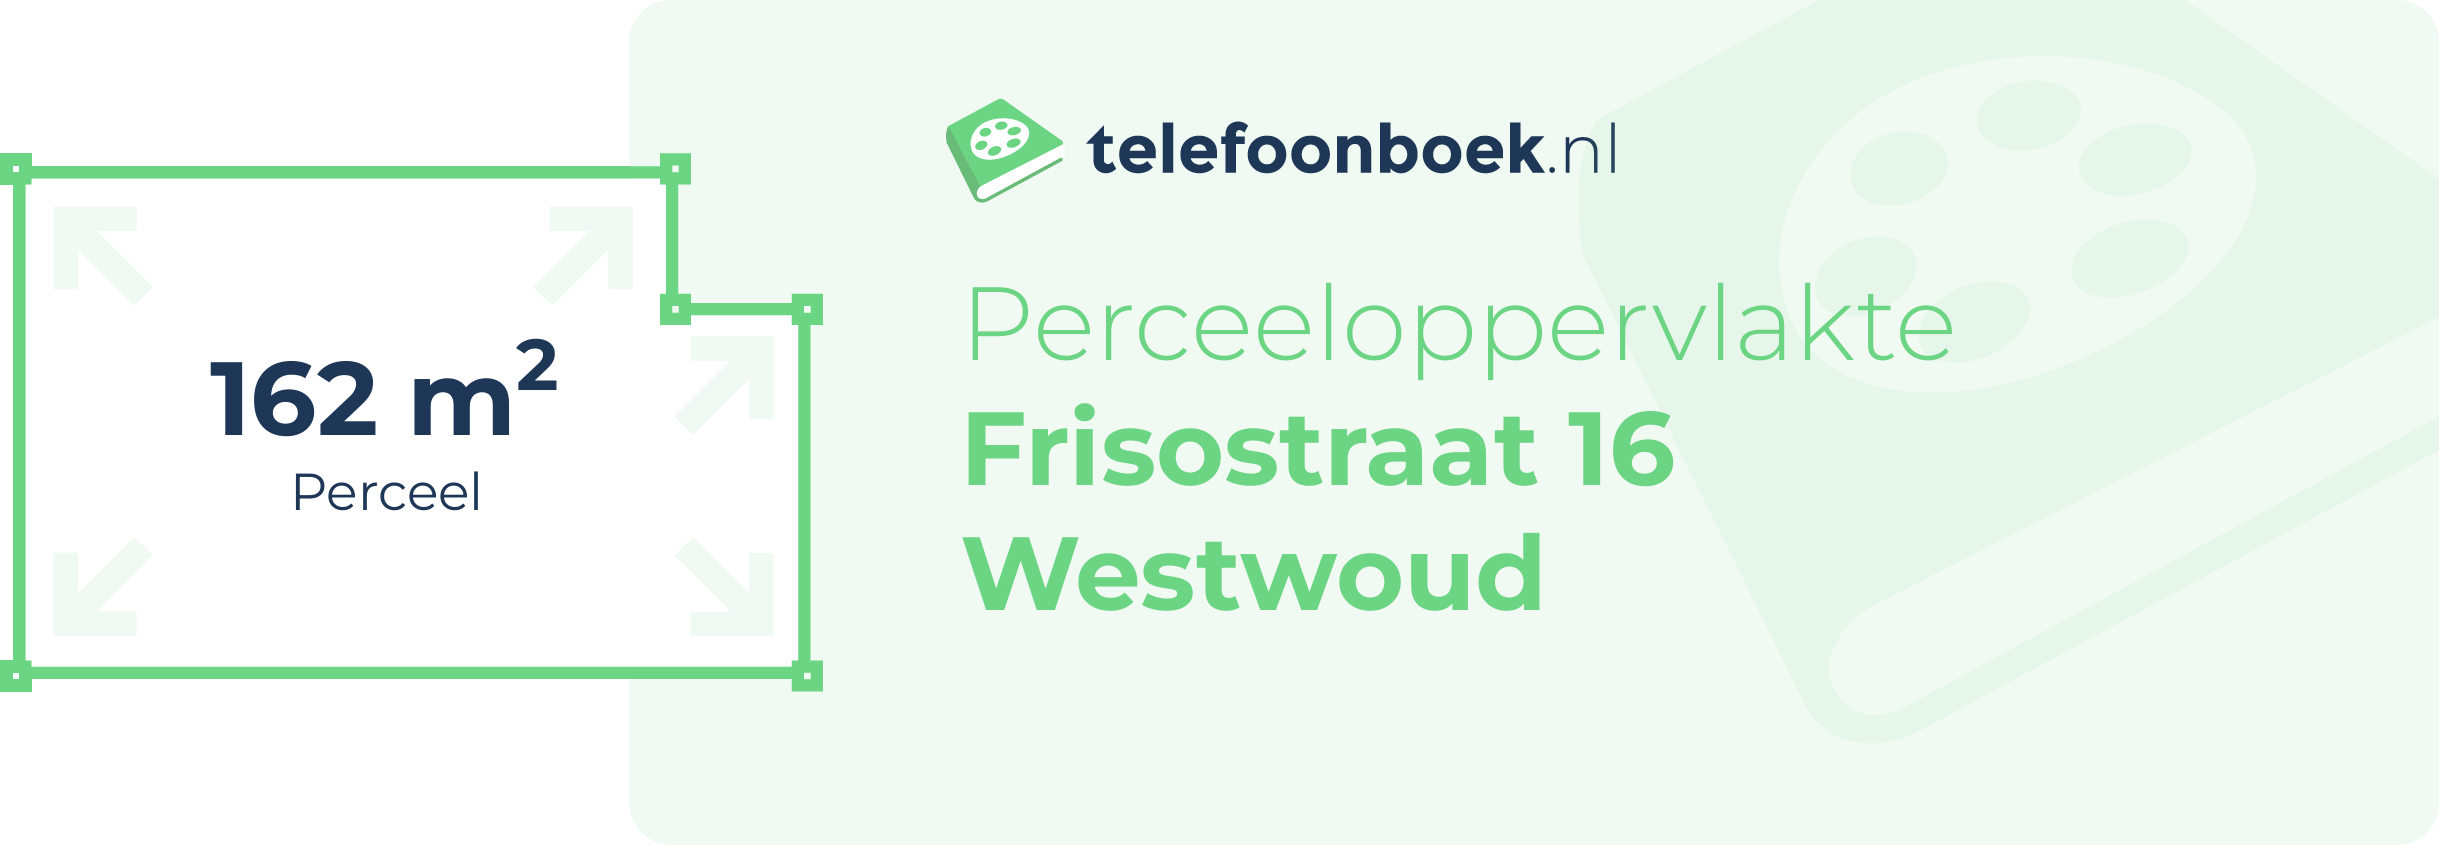 Perceeloppervlakte Frisostraat 16 Westwoud